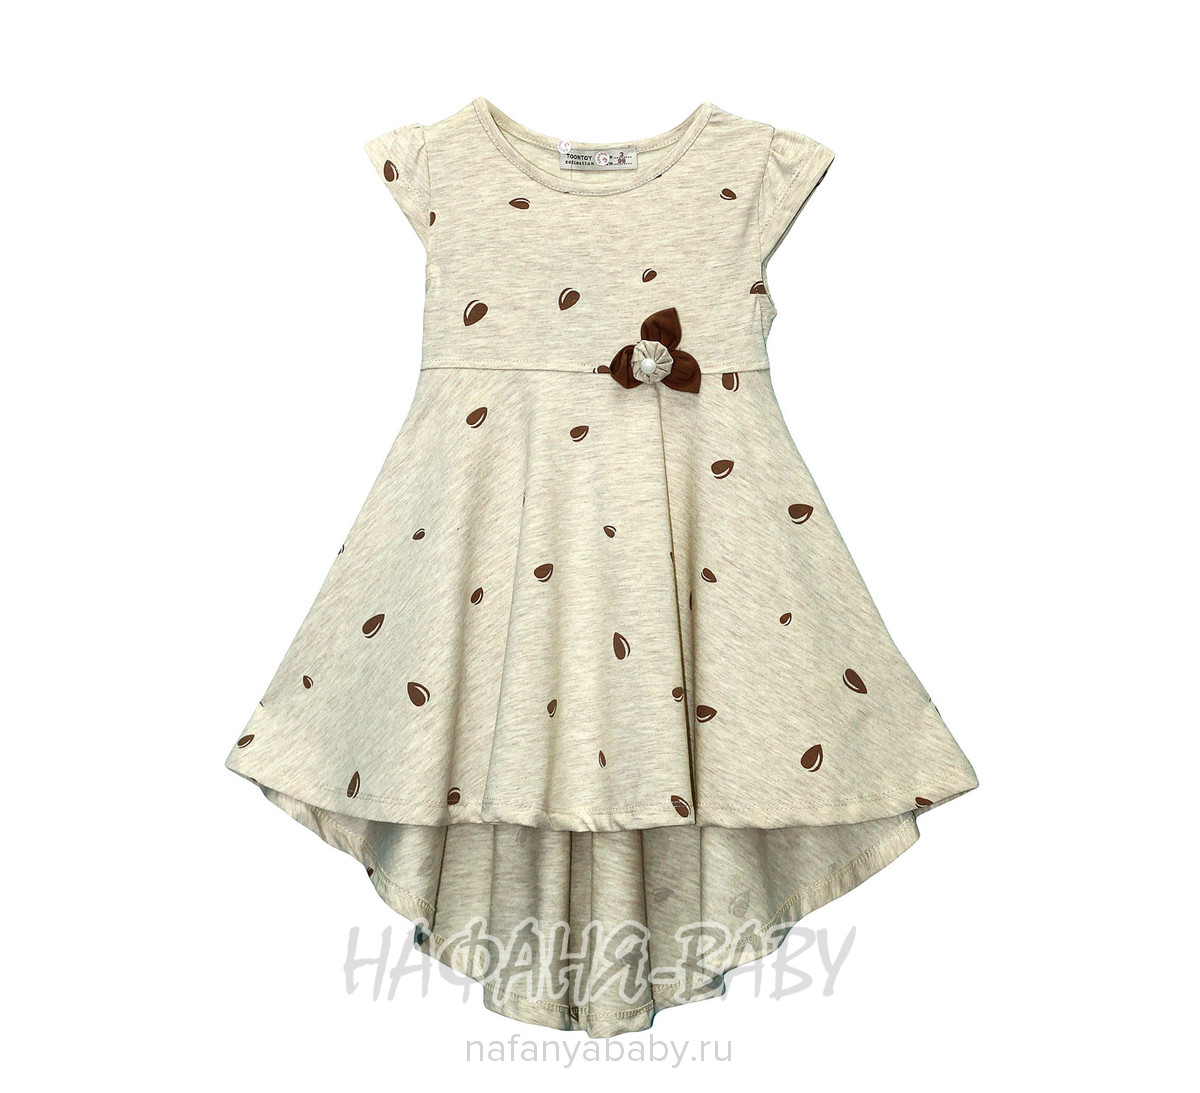 Детское трикотажное платье TOONTOY арт: 9308, 1-4 года, 5-9 лет, оптом Турция